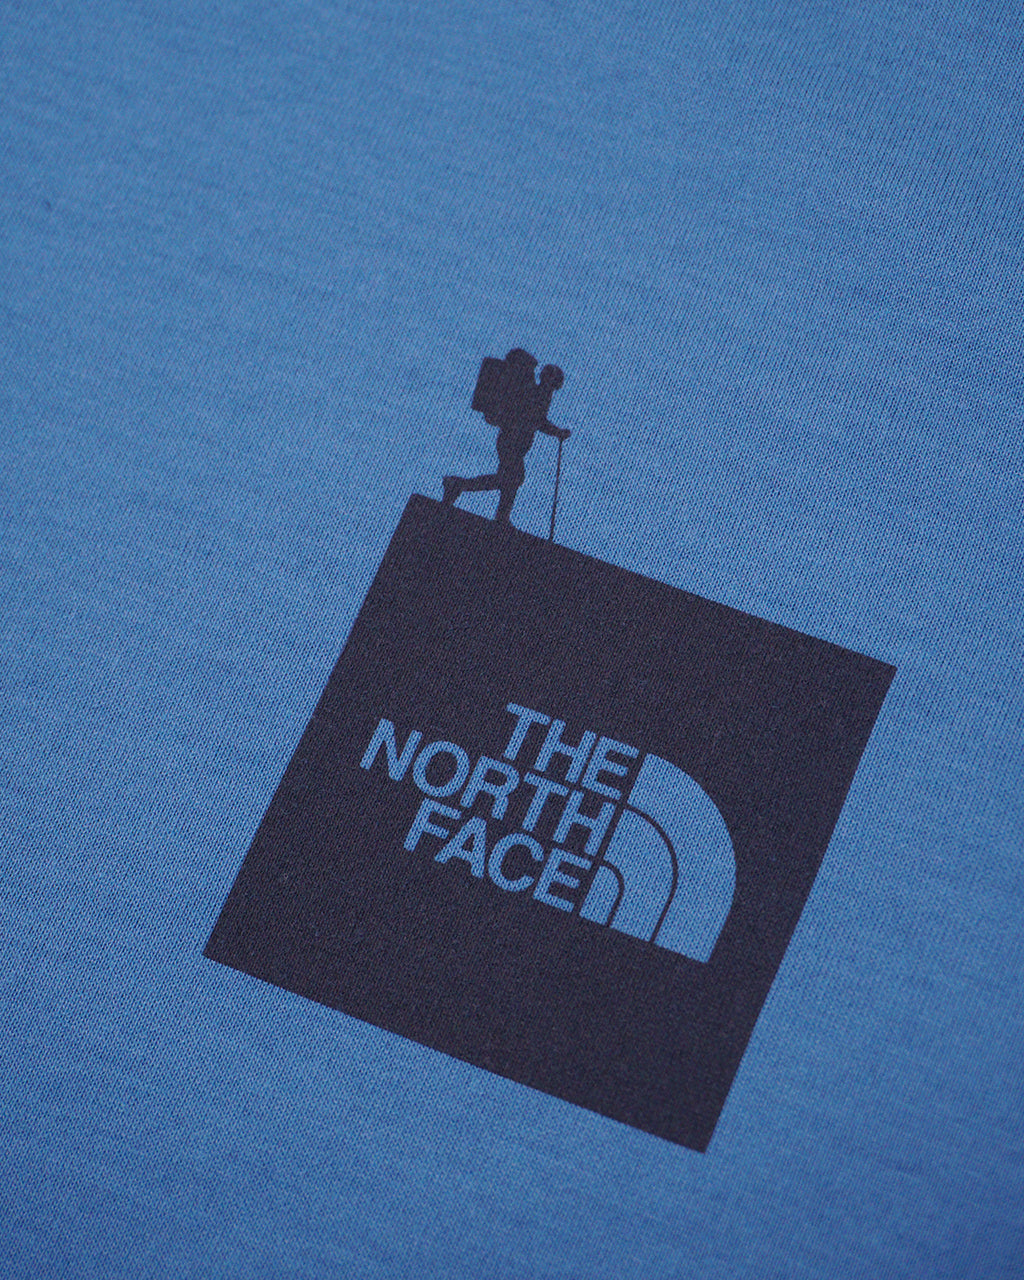 THE NORTH FACE ノースフェイス ショートスリーブ アクティブマン ティー S/S Active Man Tee 半袖 ロゴ Tシャツ